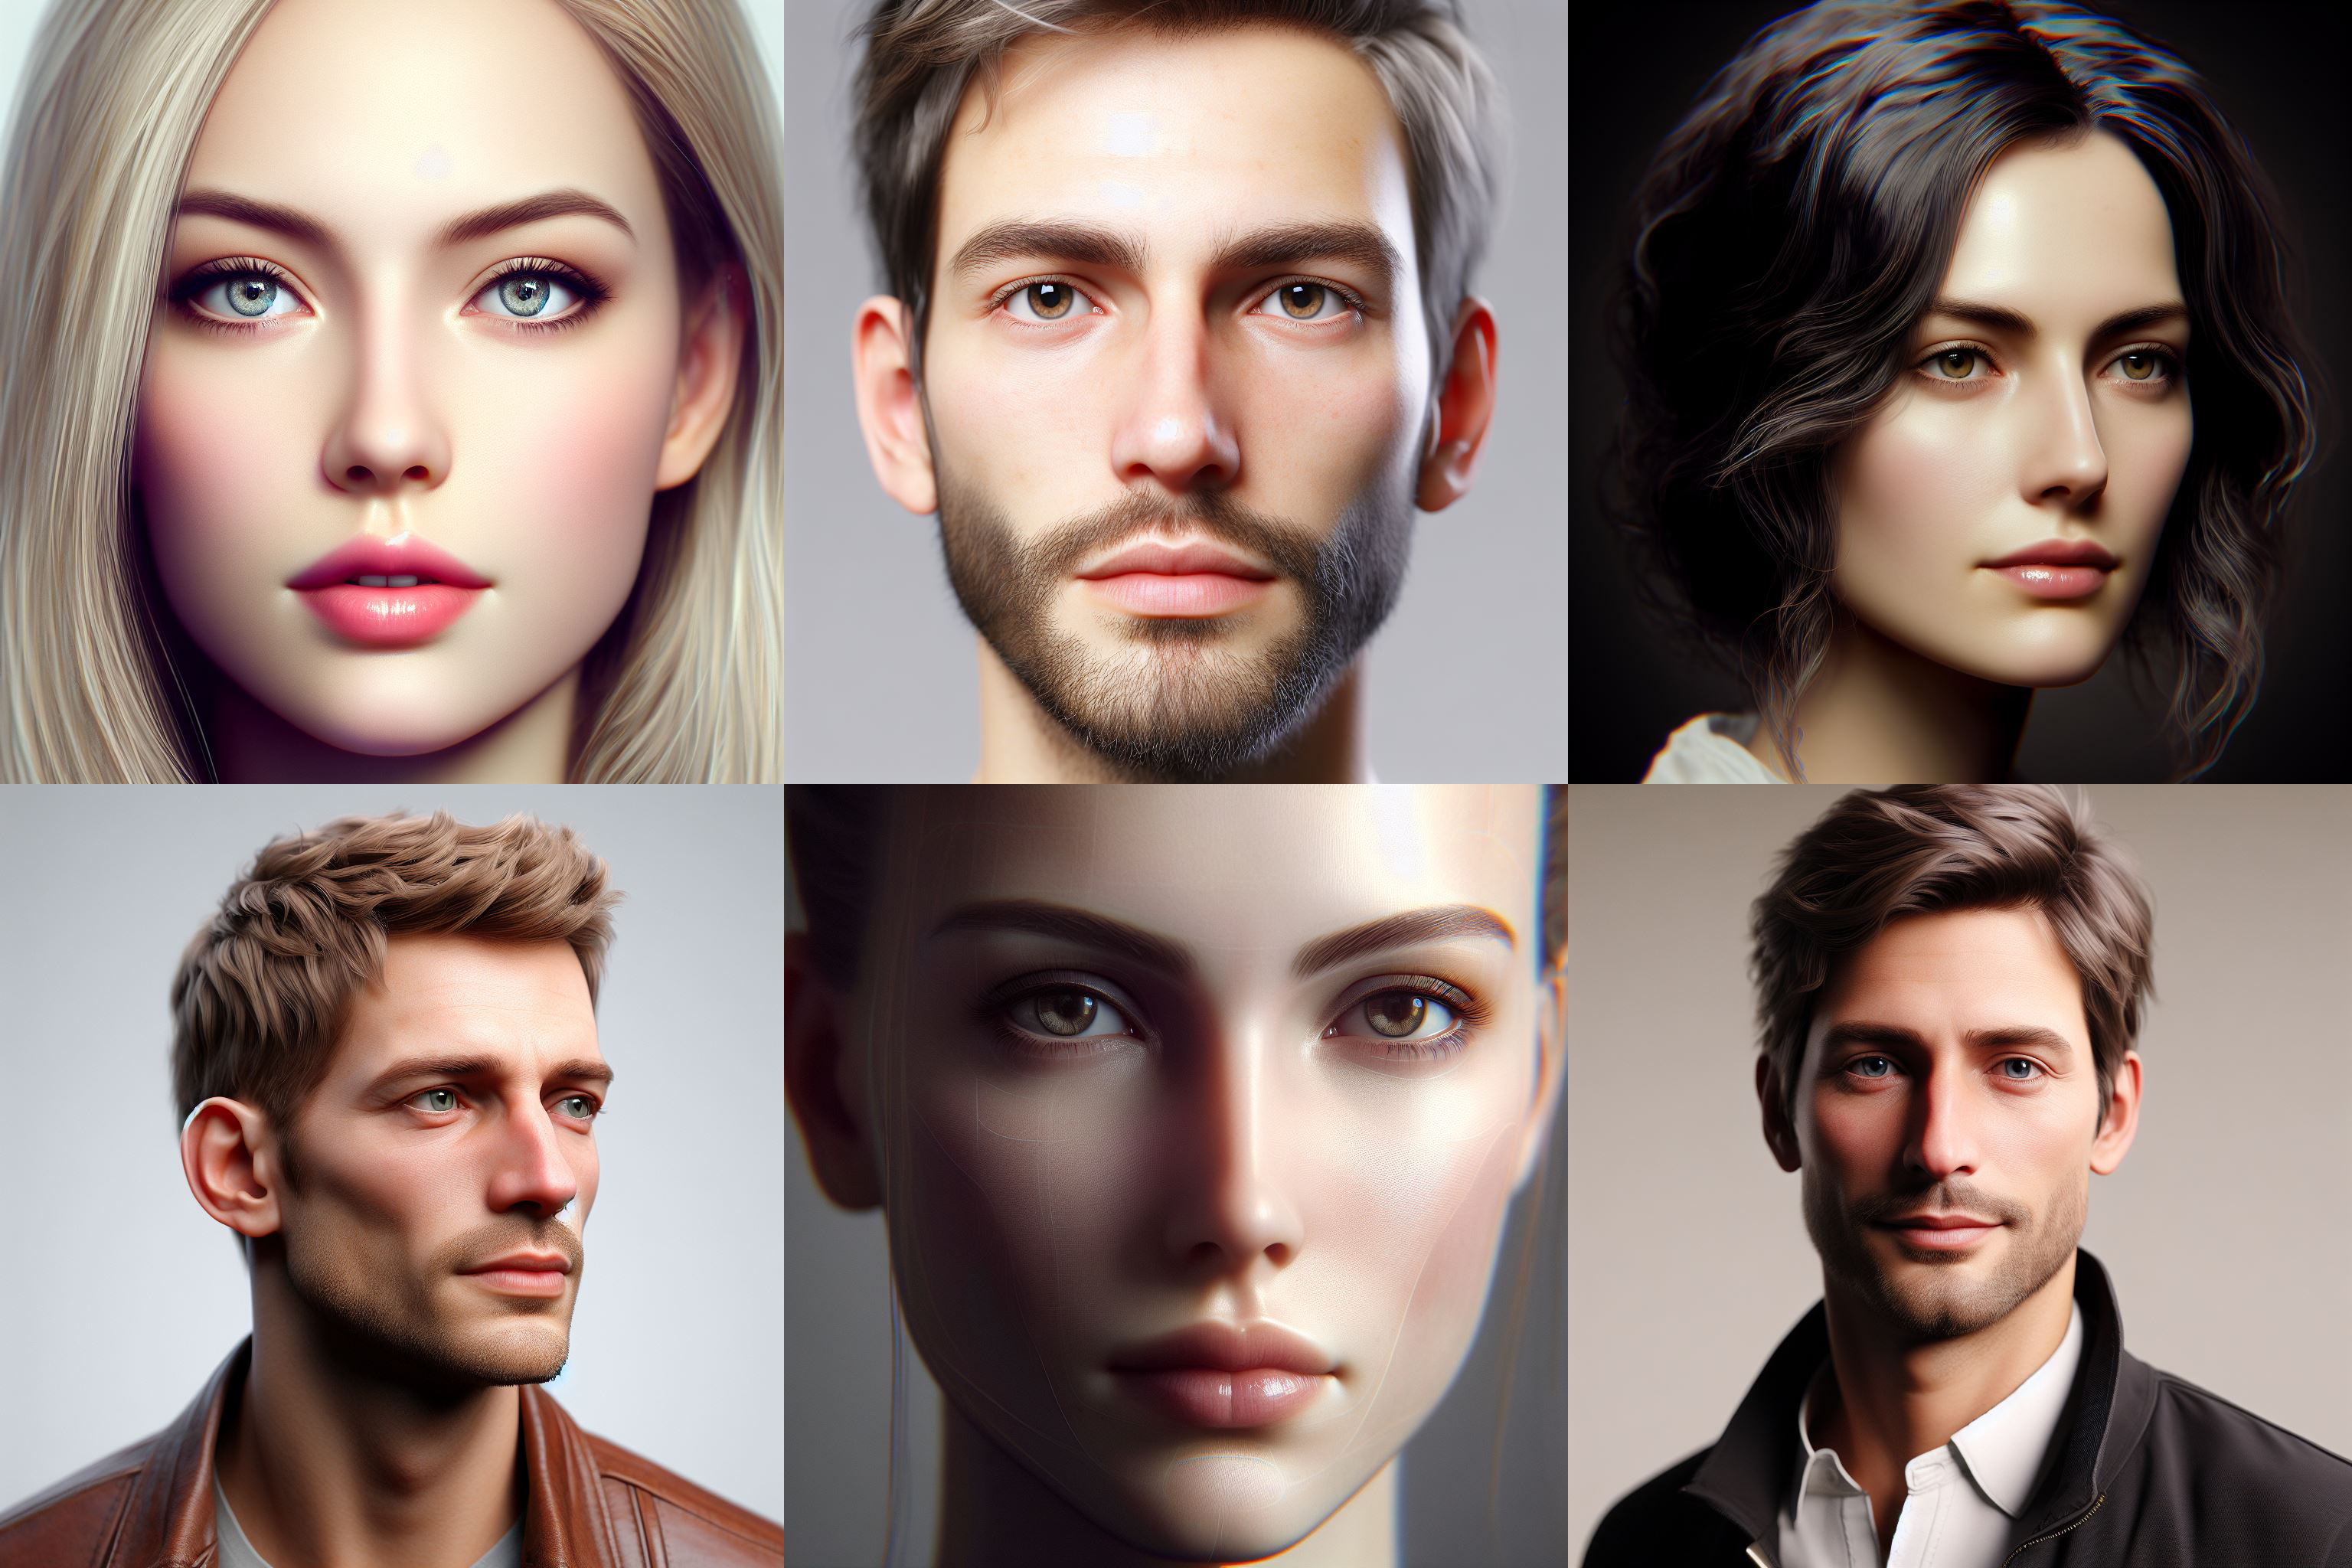 Mensen vertrouwen eerder witte gezichten in gegenereerde foto's dan in echte foto's - onderzoek